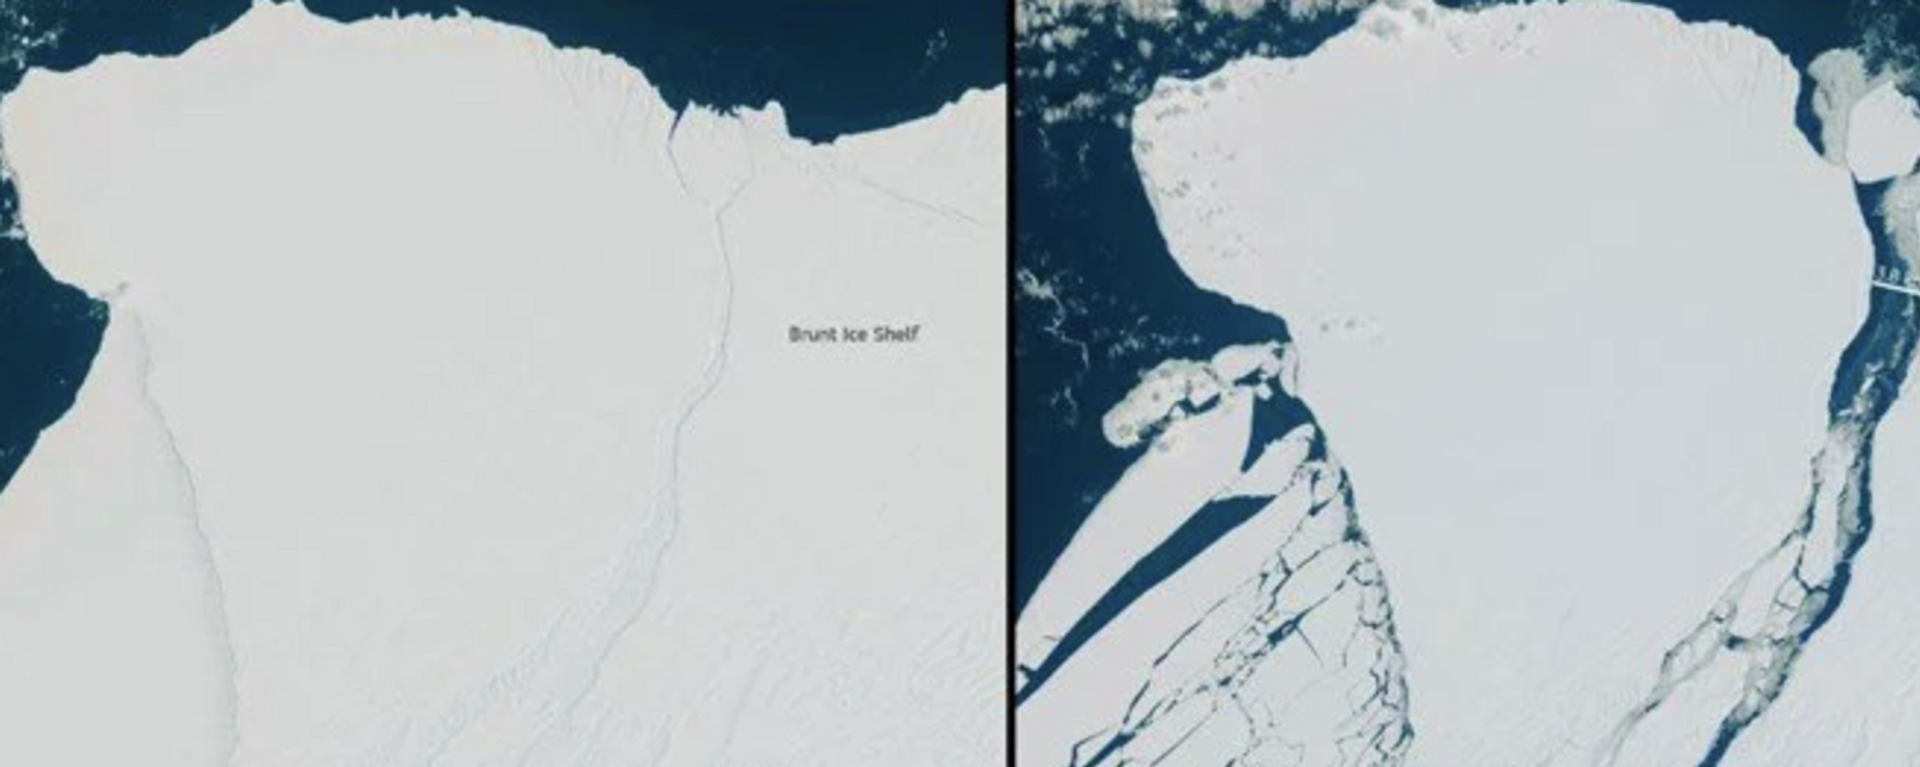 Antarktika'da, 150 metre kalınlığında ve yaklaşık Türkiye'deki Tuz Gölü'nün alanı kadar olan dev buz kütlesi koptu. - Sputnik Türkiye, 1920, 25.01.2023